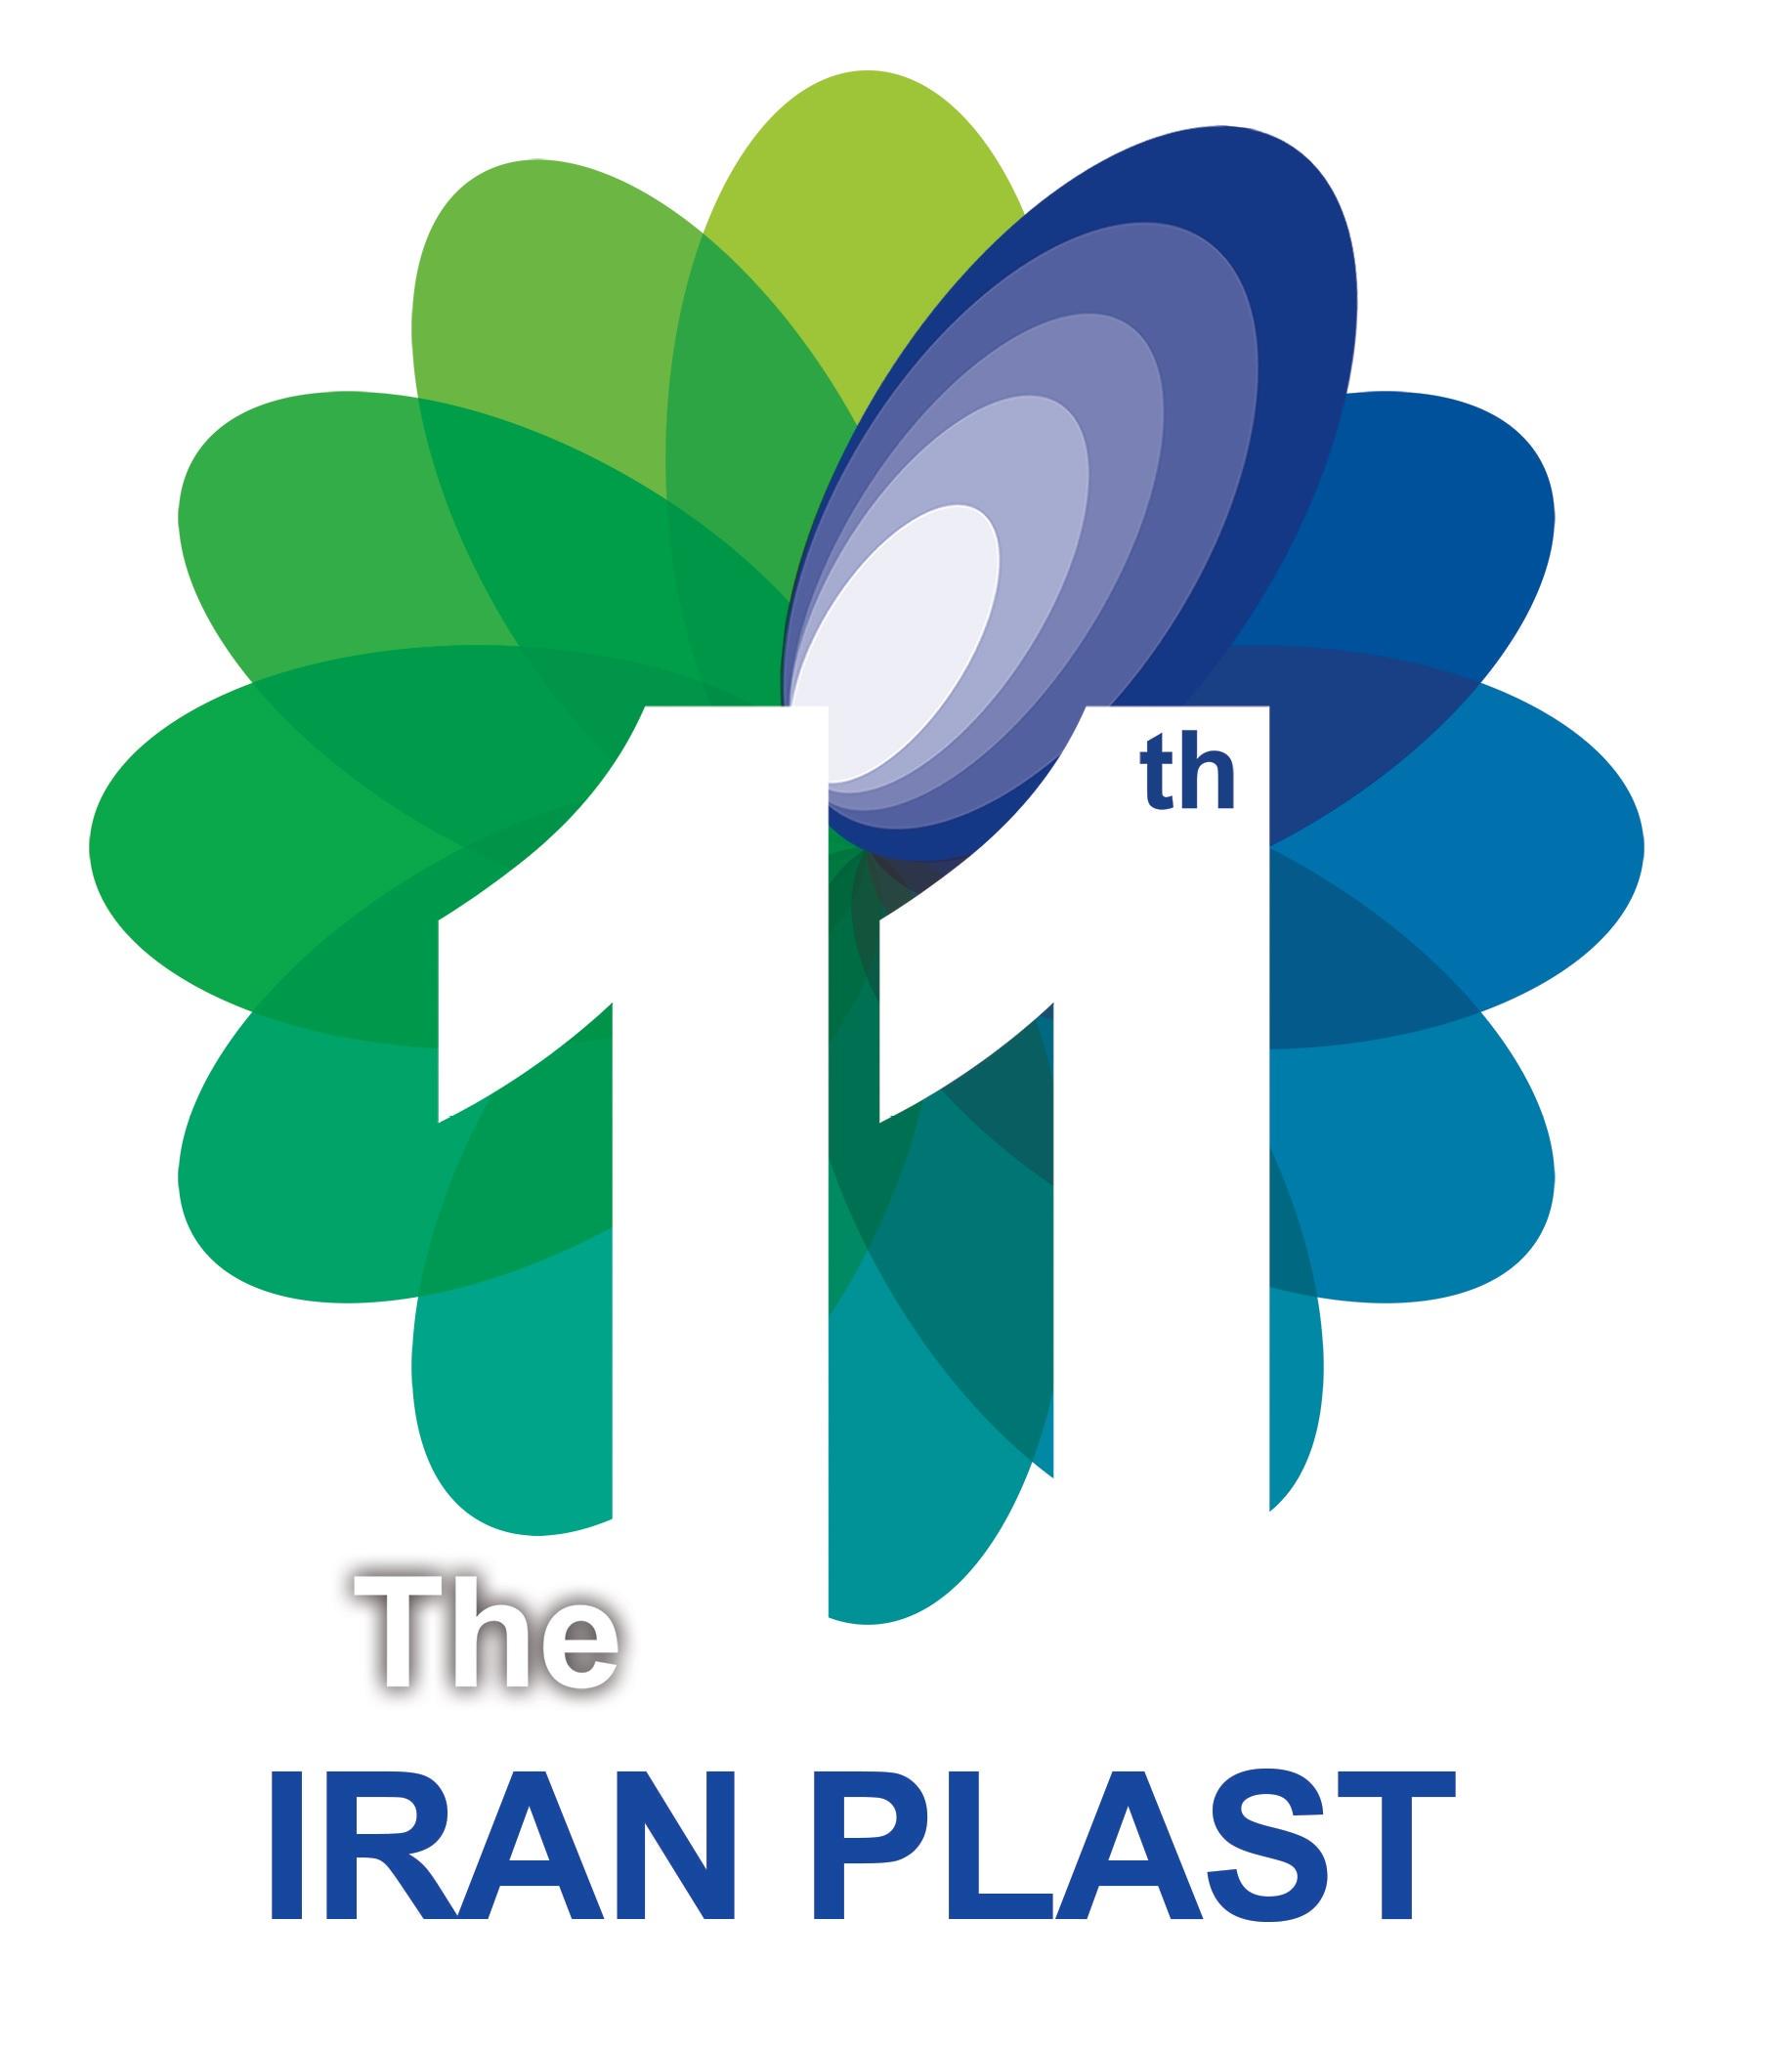 PAGEV Güvencesiyle Iranplast 2017 Uluslararası Plastik ve Kauçuk Fuarı Seyahati